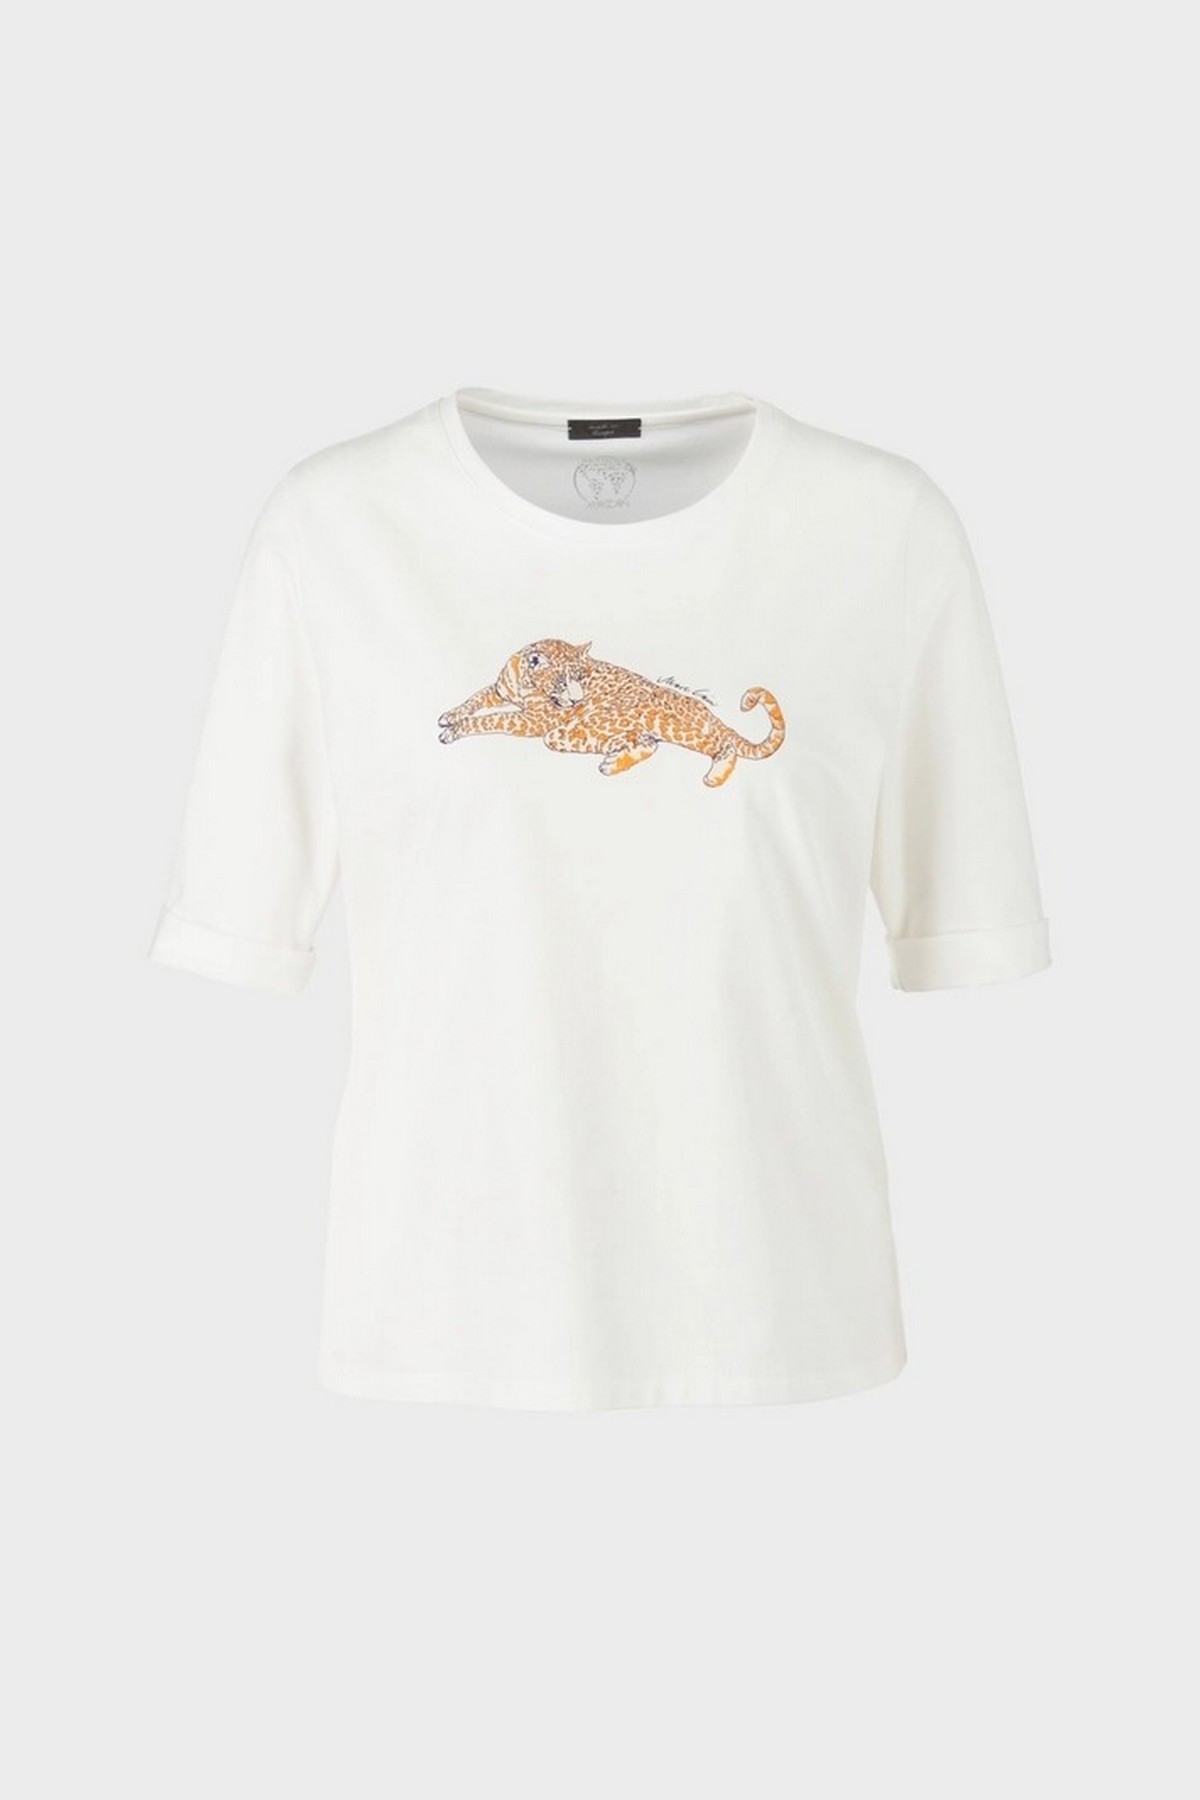 T-shirt  luipaard in de kleur wit van het merk Marc Cain Collections